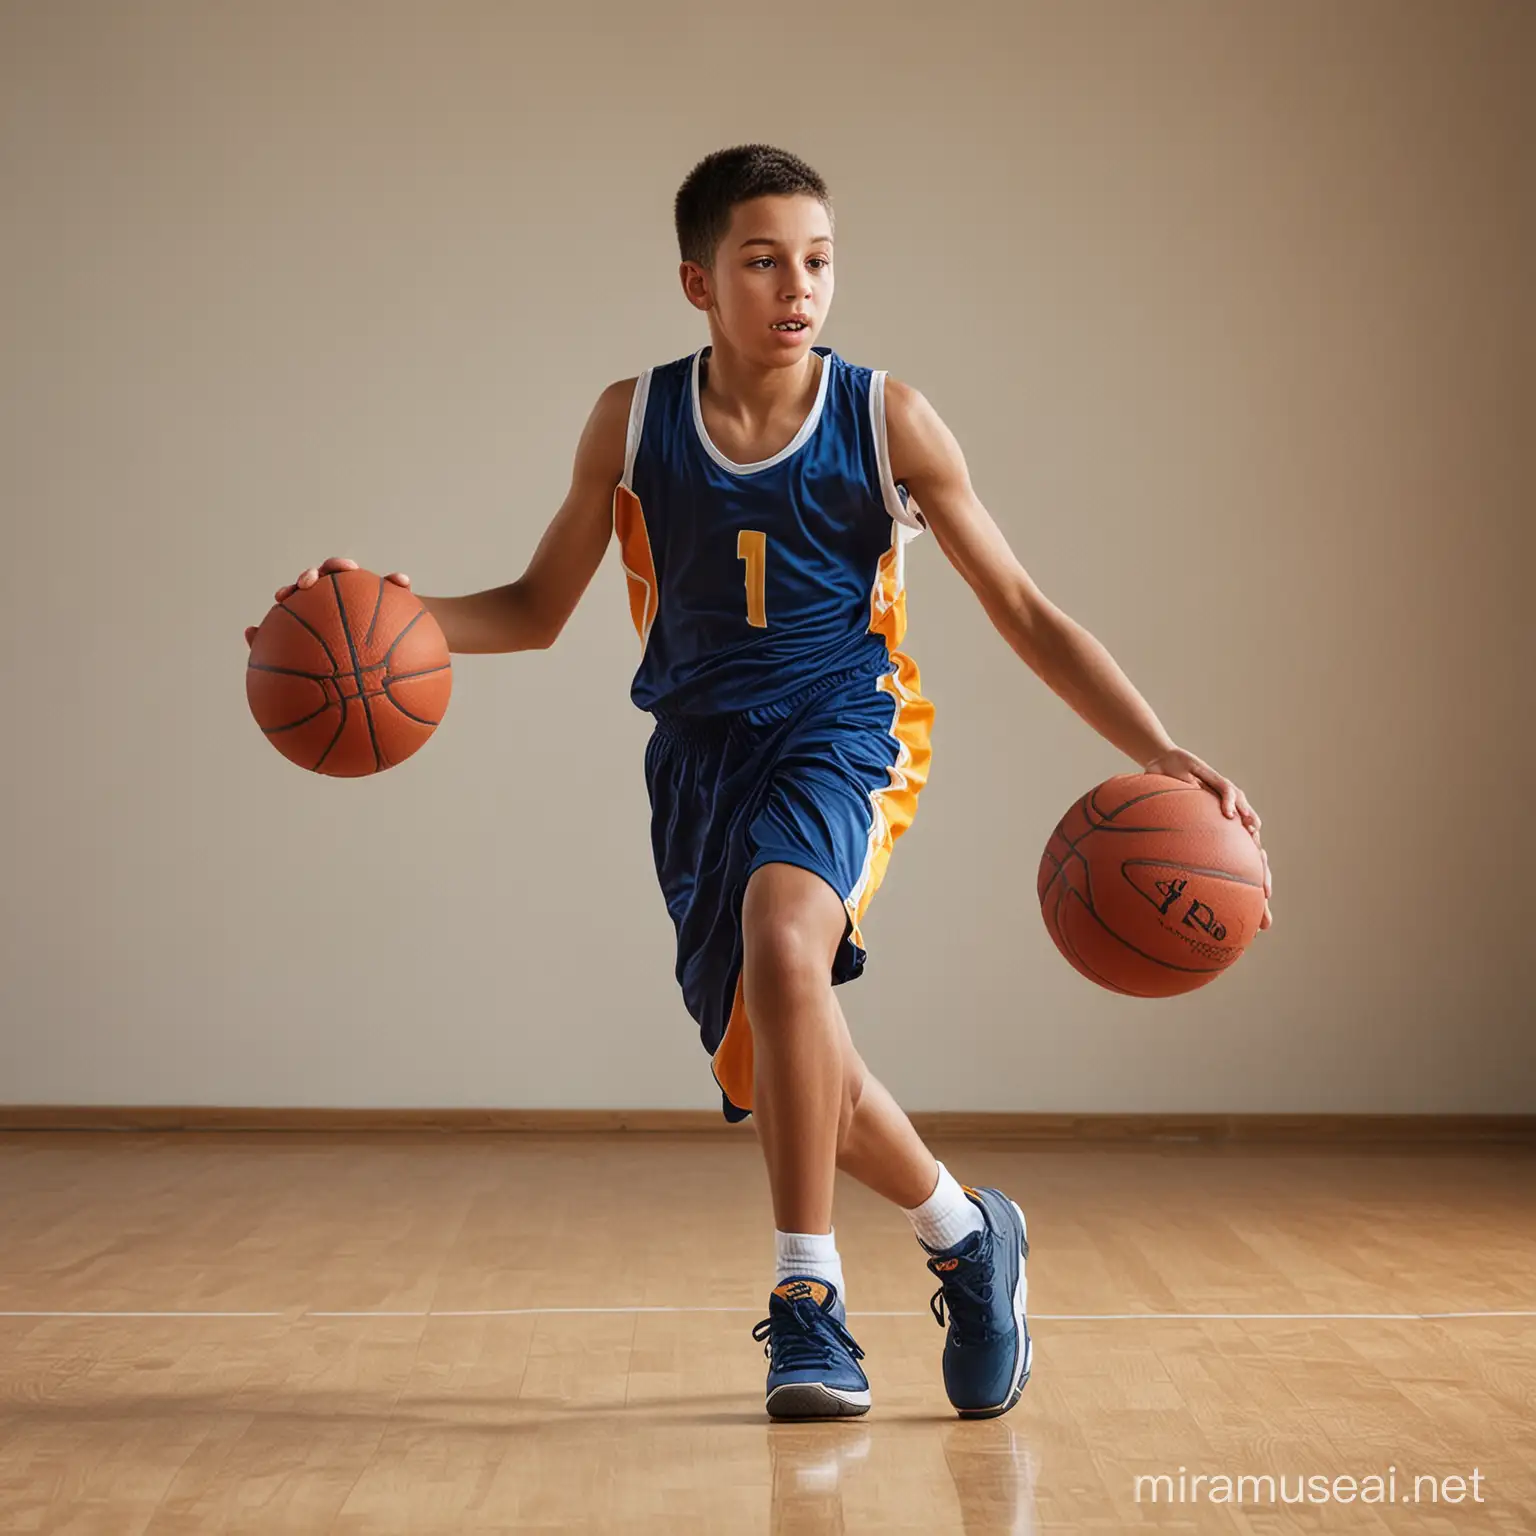 мальчик 11 лет баскетболист в движении